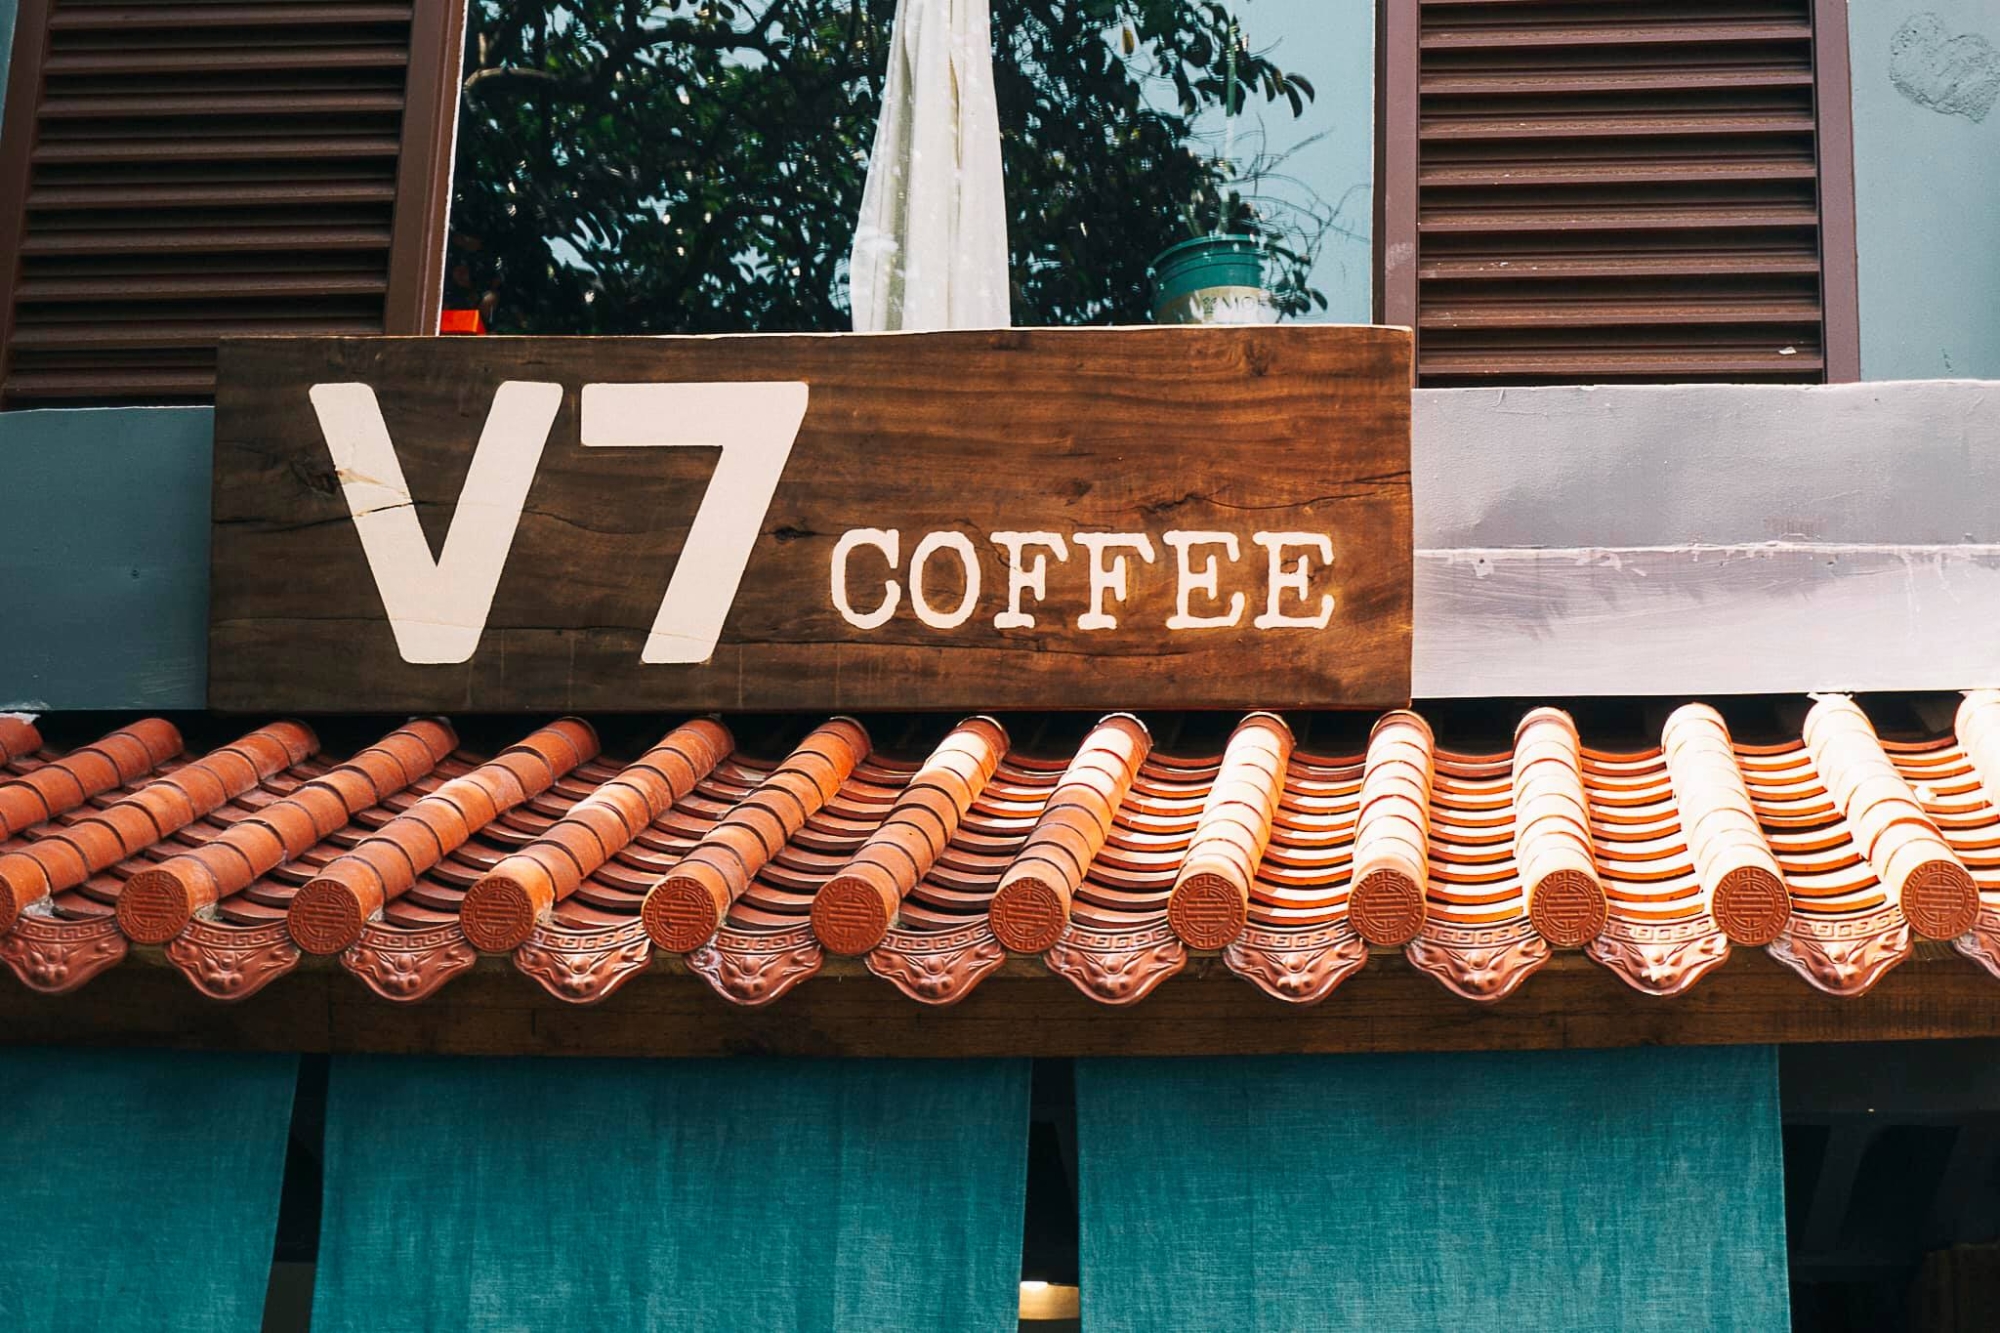 V7 Coffee